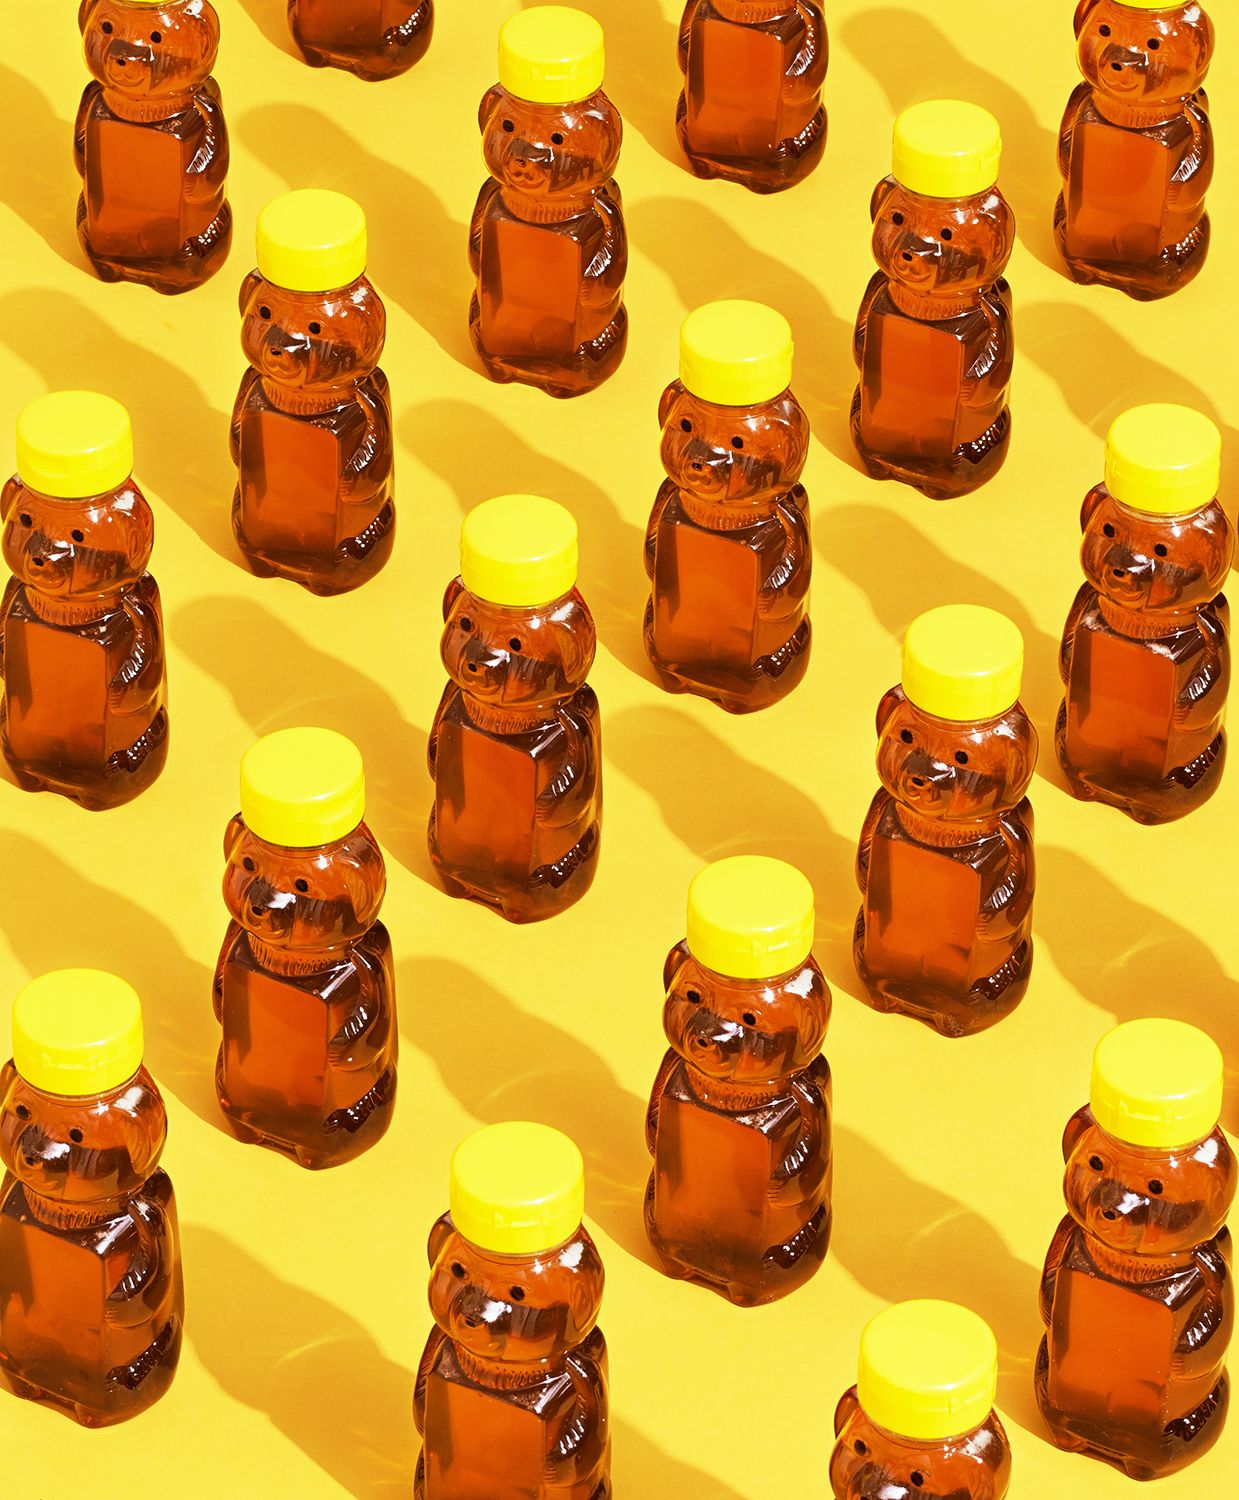 3 geniale nye måter å bruke honning på